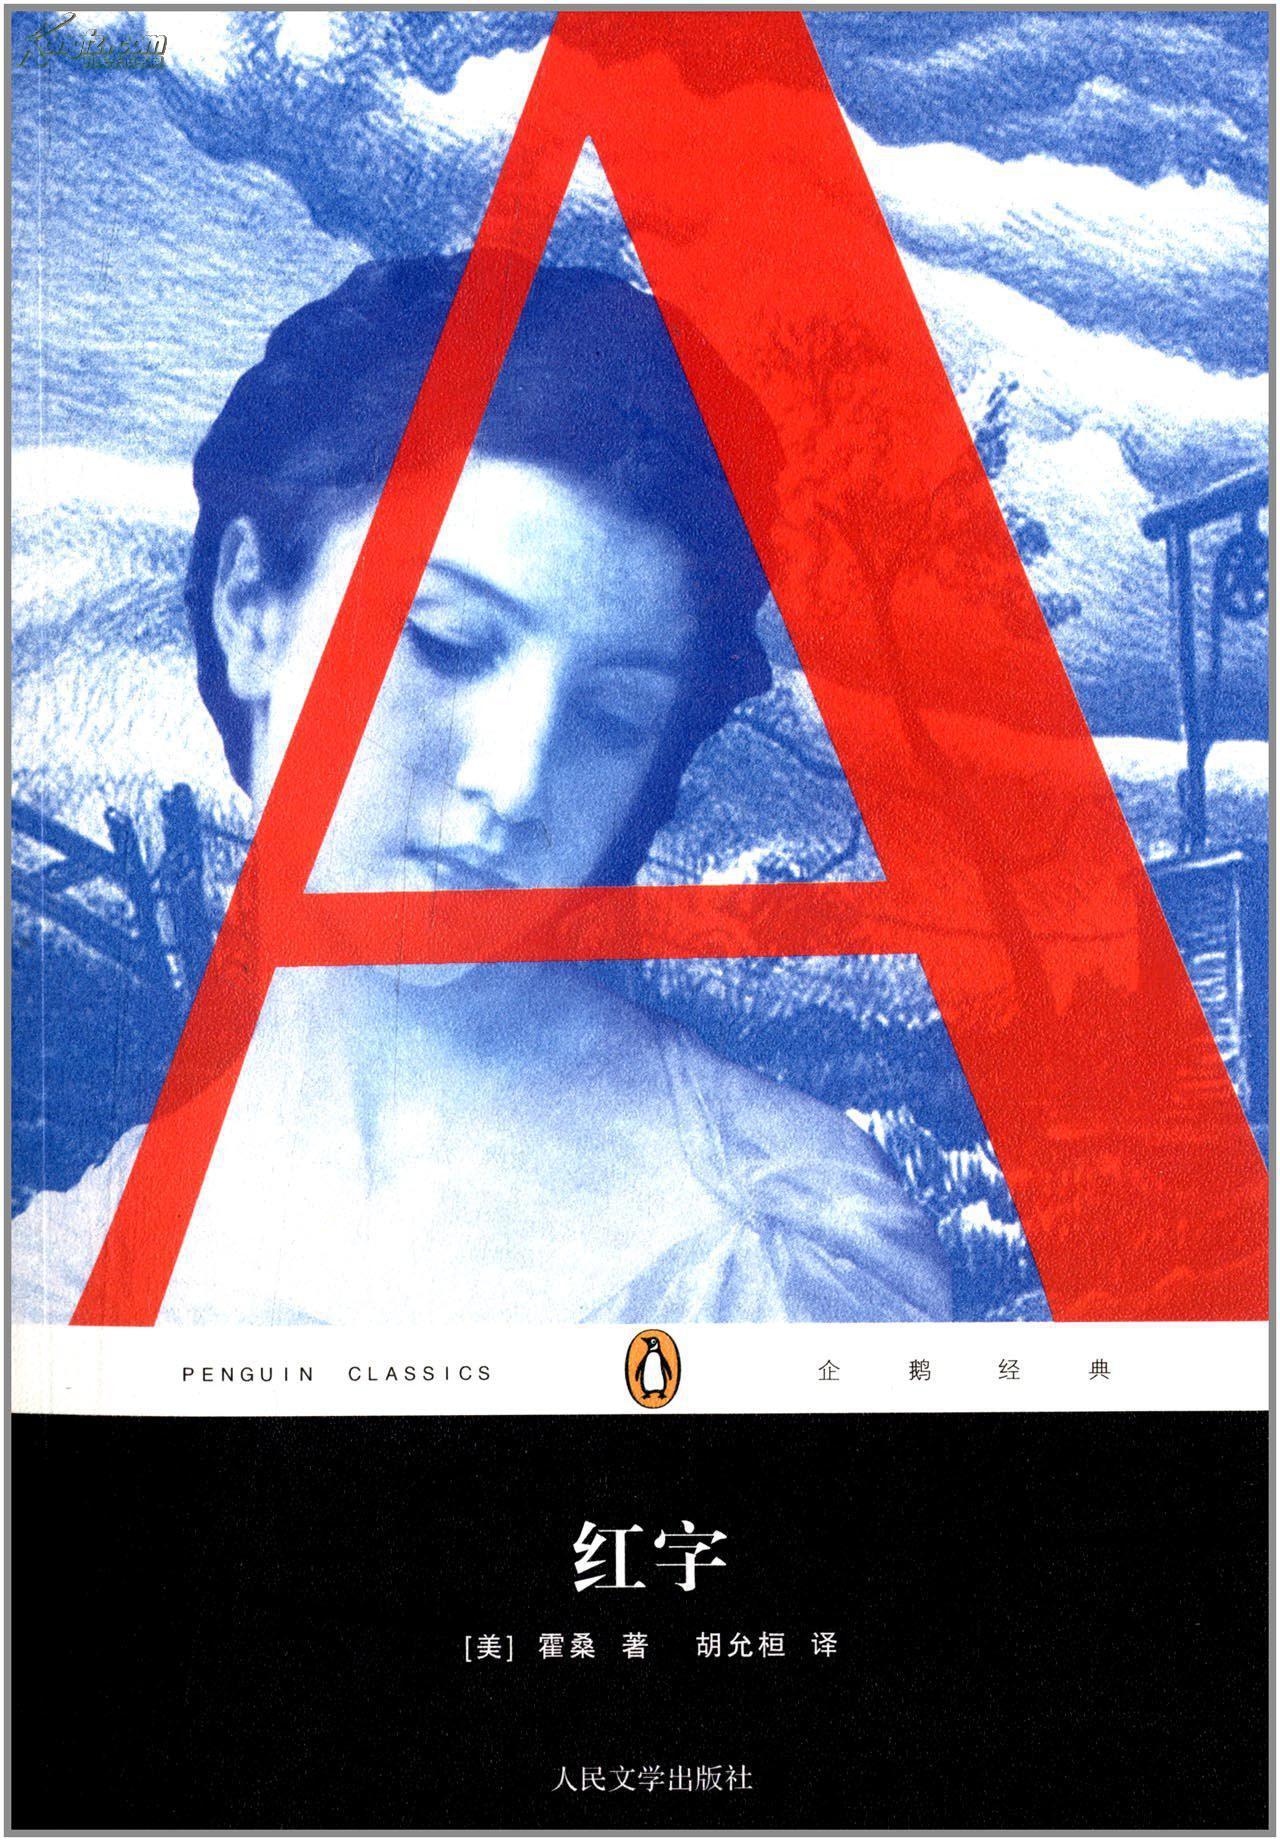 谈谈美国浪漫主义小说代表作《红字》和隐忍的女性